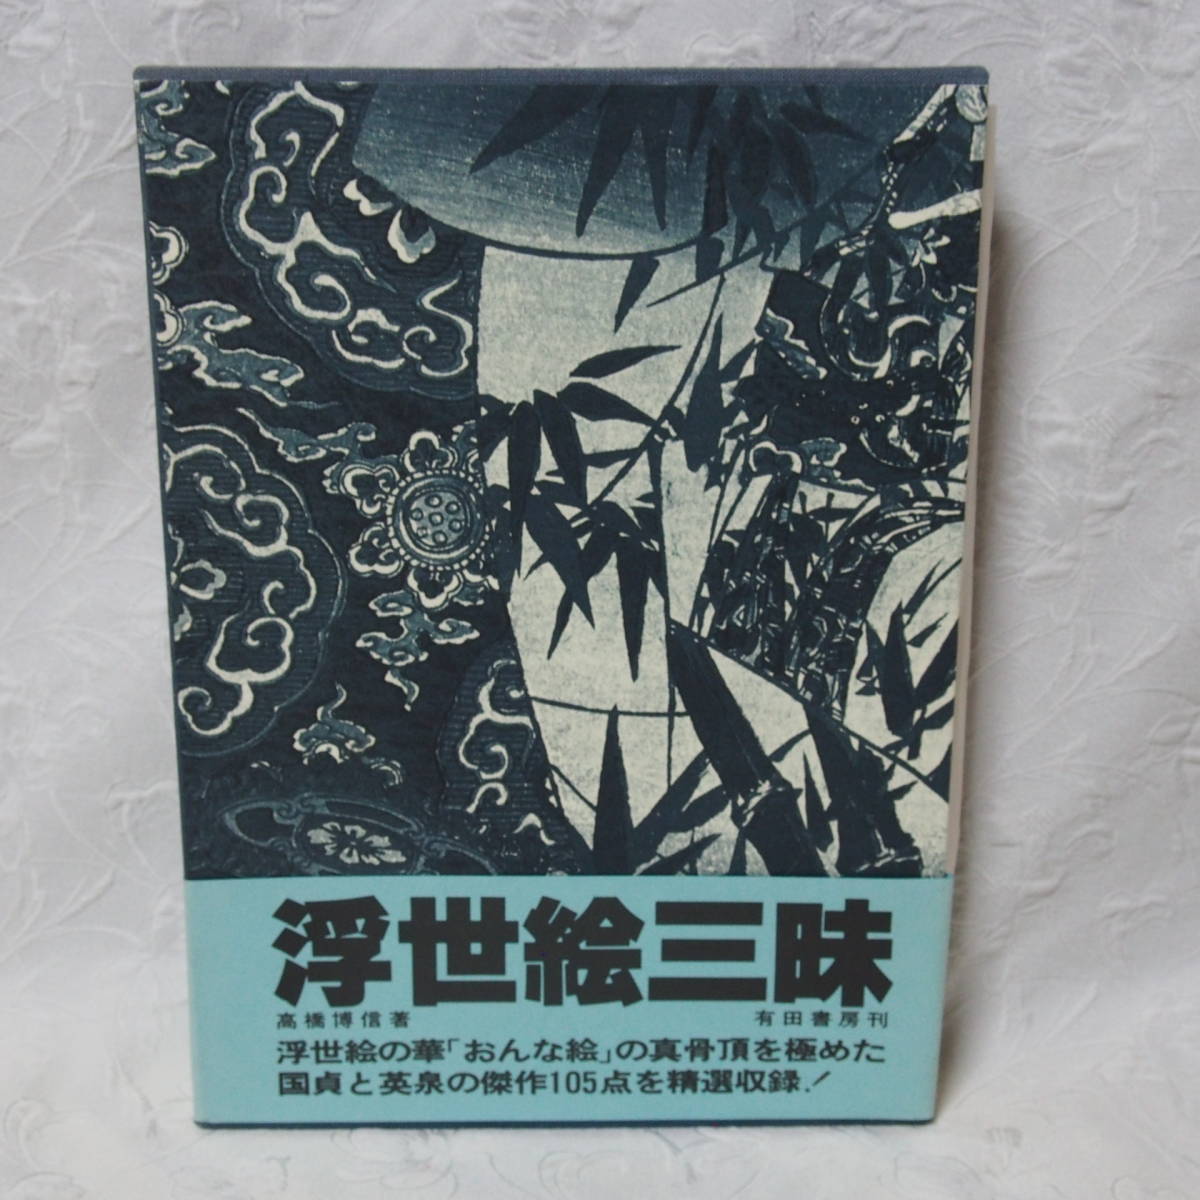 Valioso, extraño, y edición coleccionable!! Libro de alta calidad Ukiyo-e Zanmai / Hironobu Takahashi / Publicado el 15 de diciembre, 1980 (precio en ese momento:, 5000 yenes), Cuadro, Ukiyo-e, Huellas dactilares, Retrato de una mujer hermosa